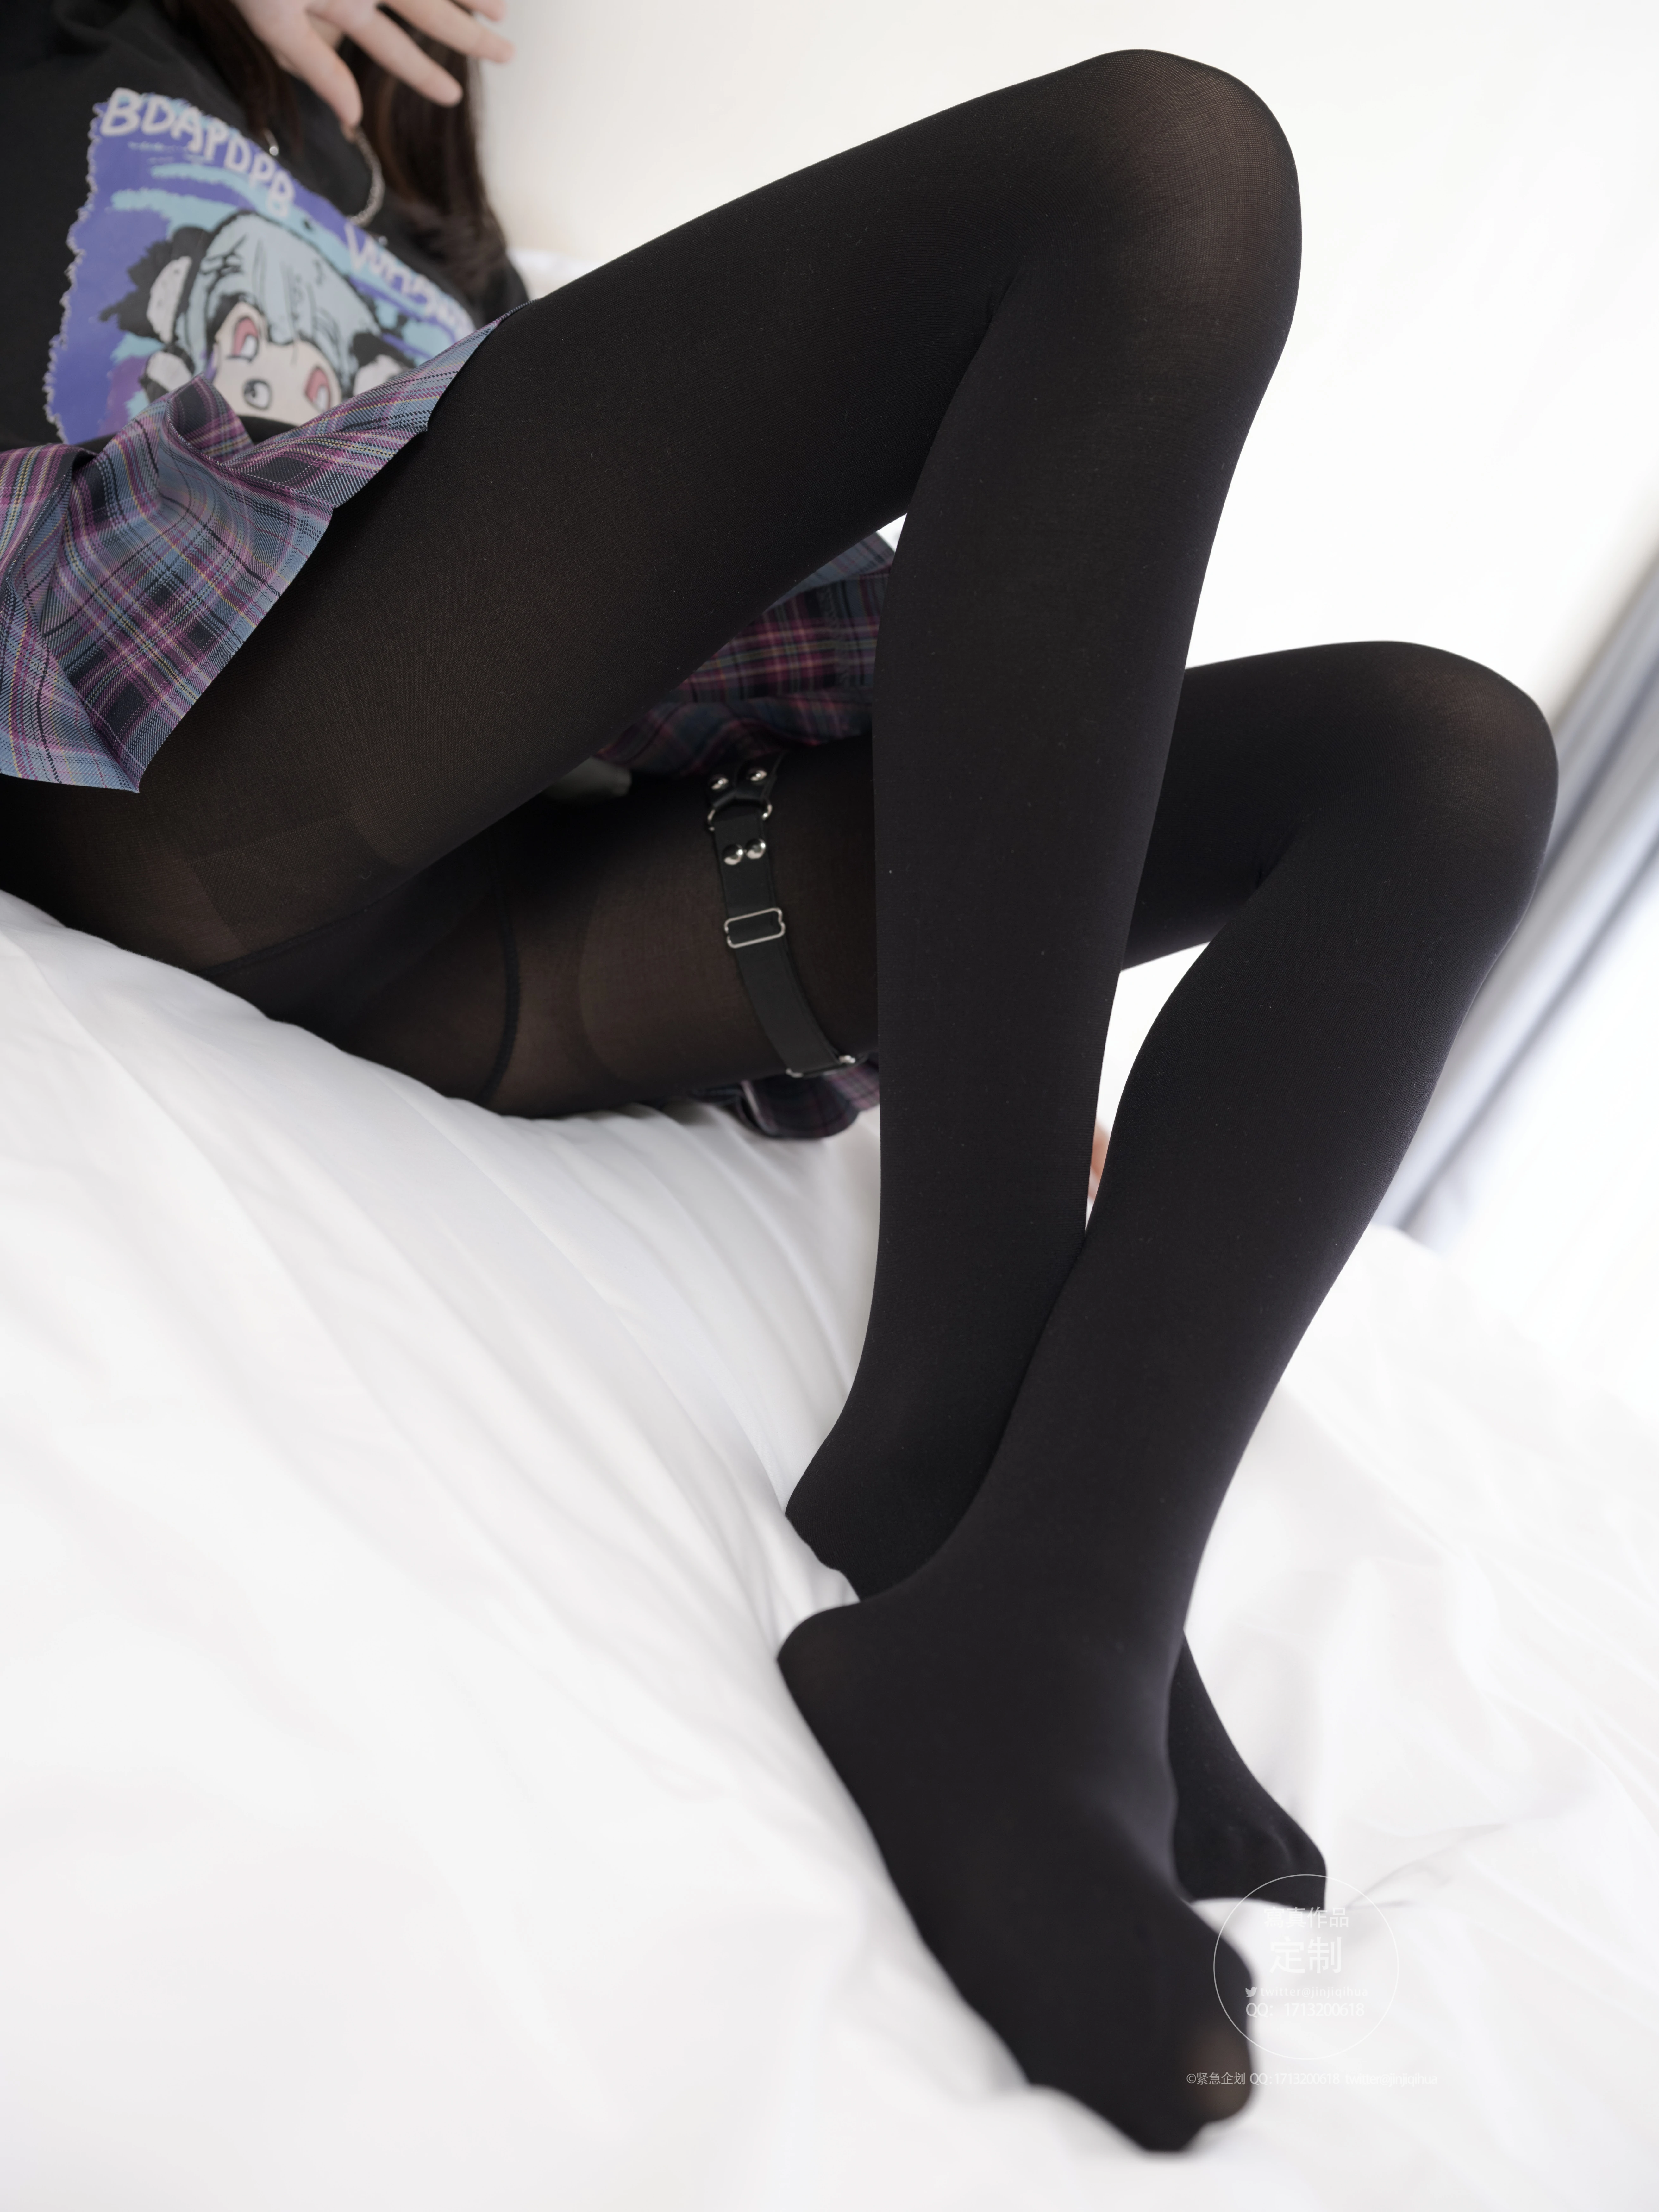 [紧急企划]Y-001 不露脸的少女萝莉 黑色JK制服与格子短裙加黑丝美腿性感私房写真集,0086